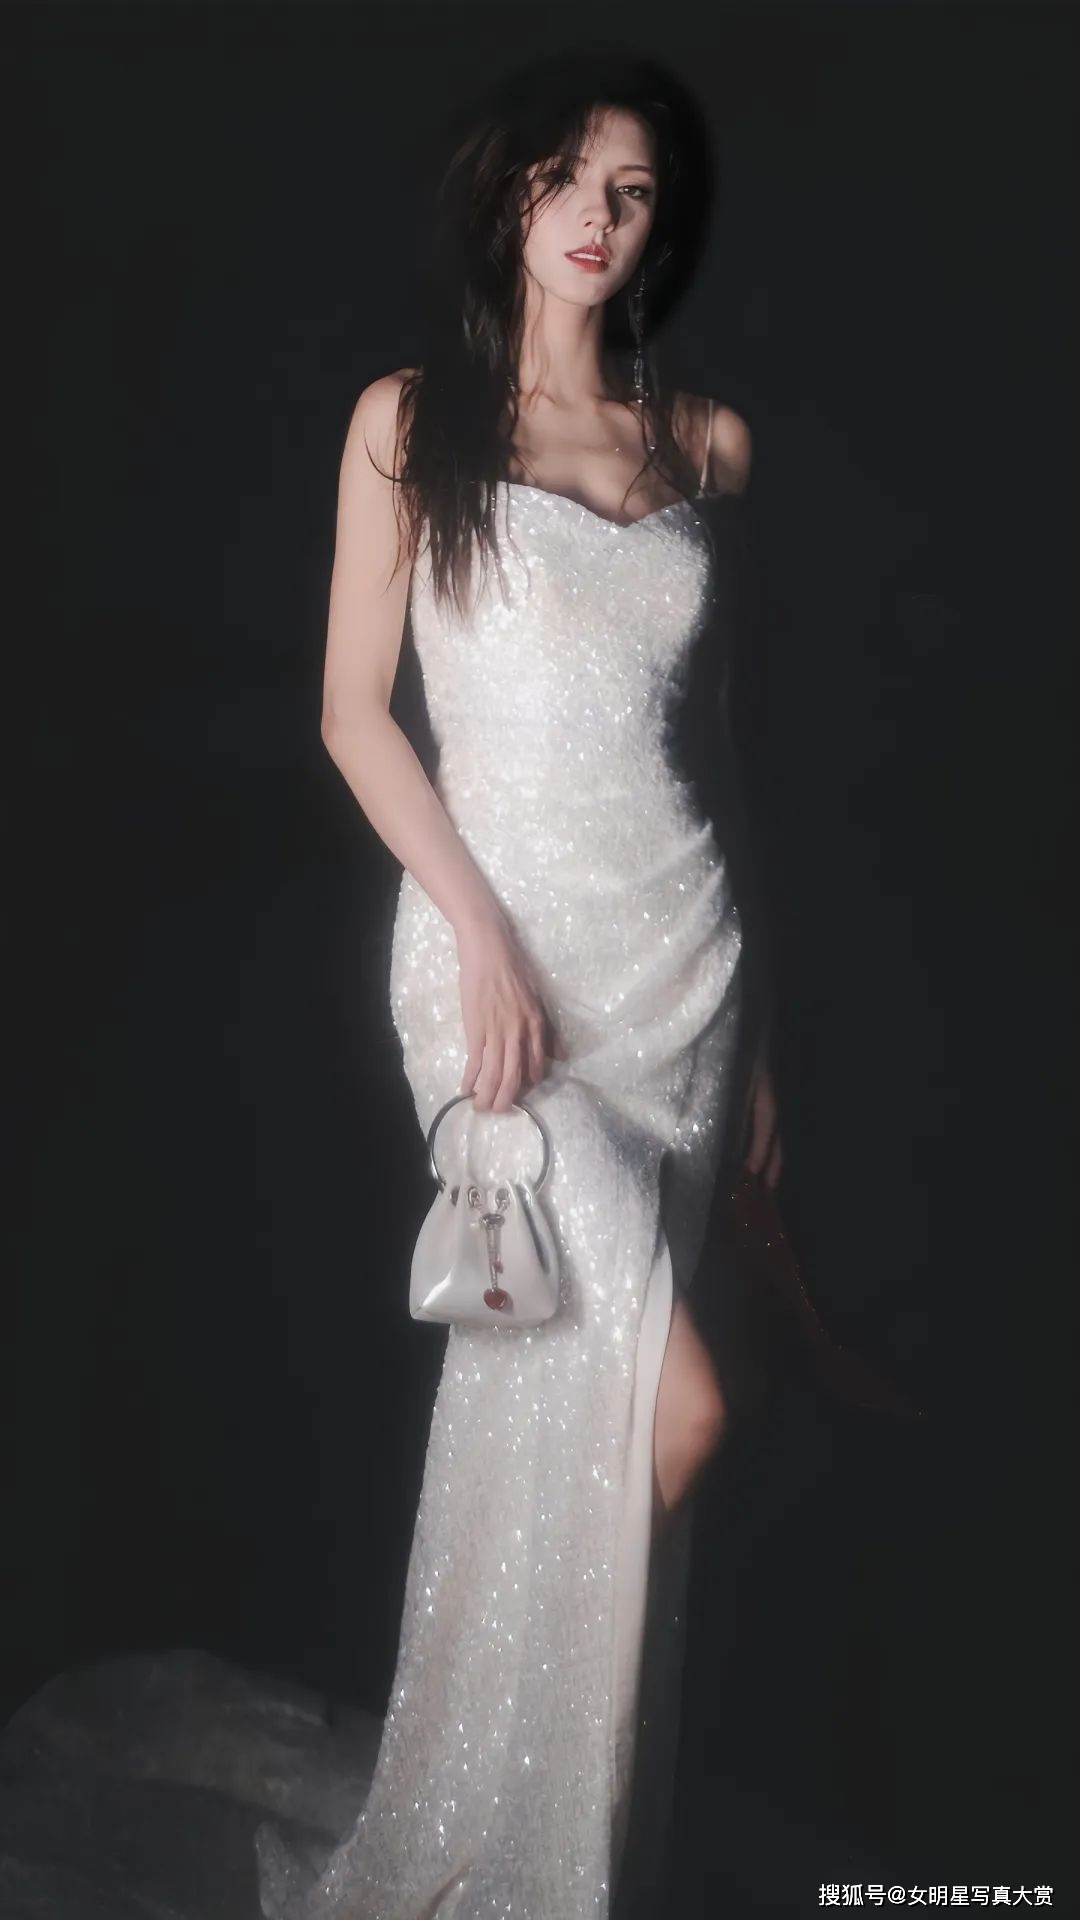 【张予曦唯美写真】白色碎钻吊带裙,魅力诱人,如海的女儿般纯净